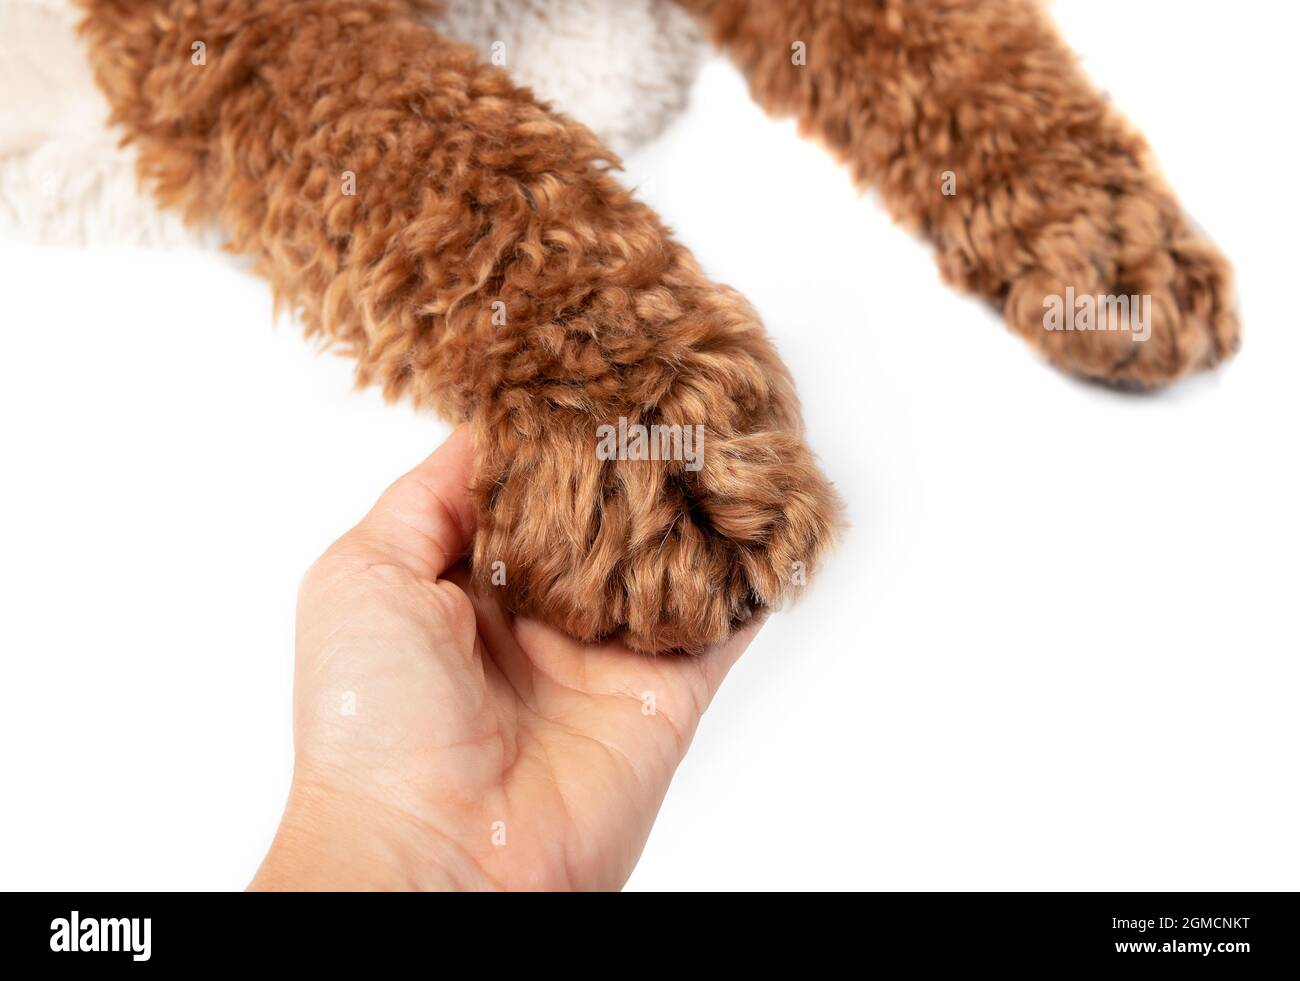 Weibliche Hand hält eine Hundepfote, Stop-View. Süße, flauschige, lockige Labradoodle-Hundepfote liegt auf einer menschlichen Hand. Konzept für Tierliebe und wie Haustiere bereichern Stockfoto